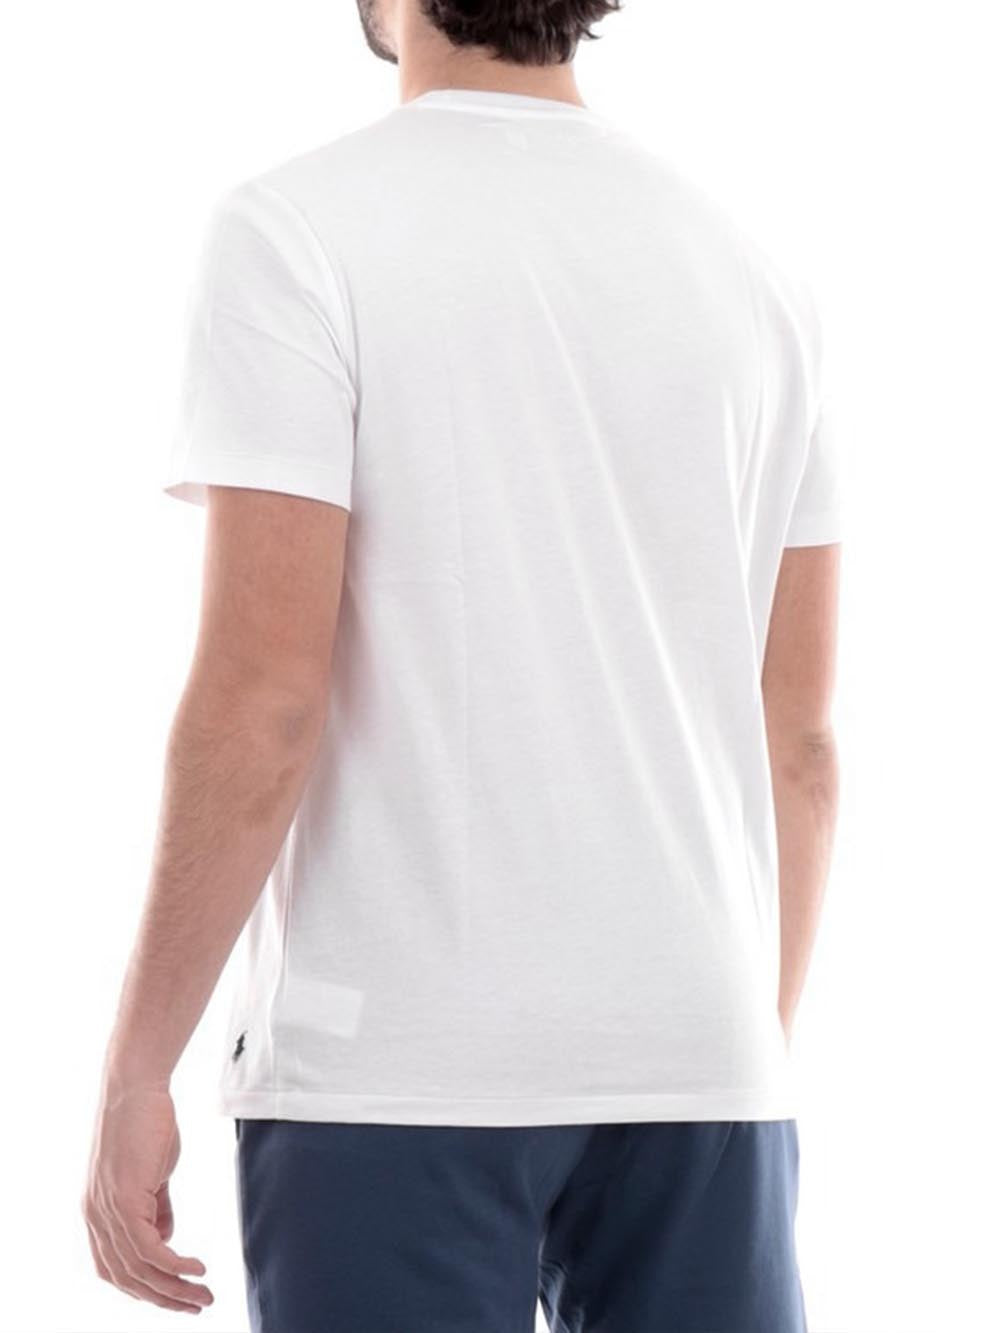 Polo Ralph Lauren T-shirt Uomo 714899613 Bianco